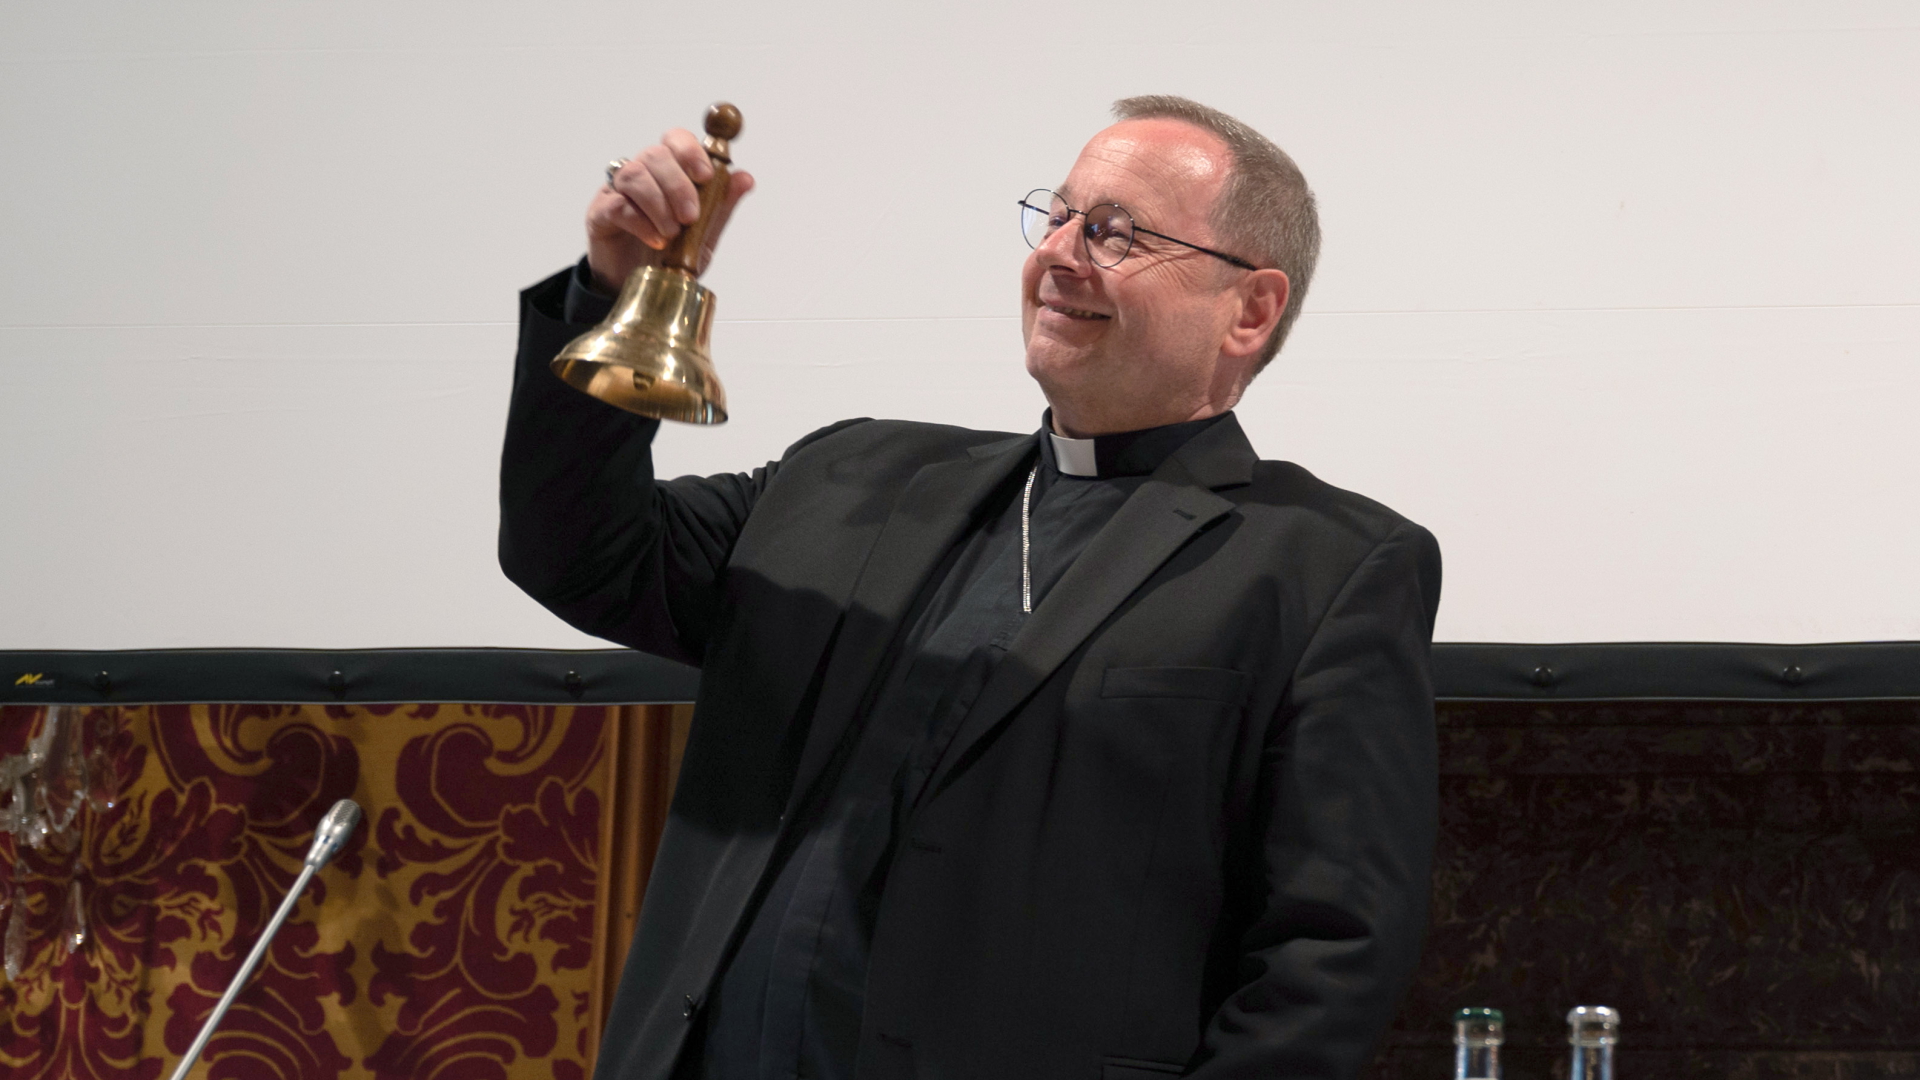 Der Vorsitzende der Deutschen Bischofskonferenz, Georg Bätzing, läutet eine Glocke. | dpa